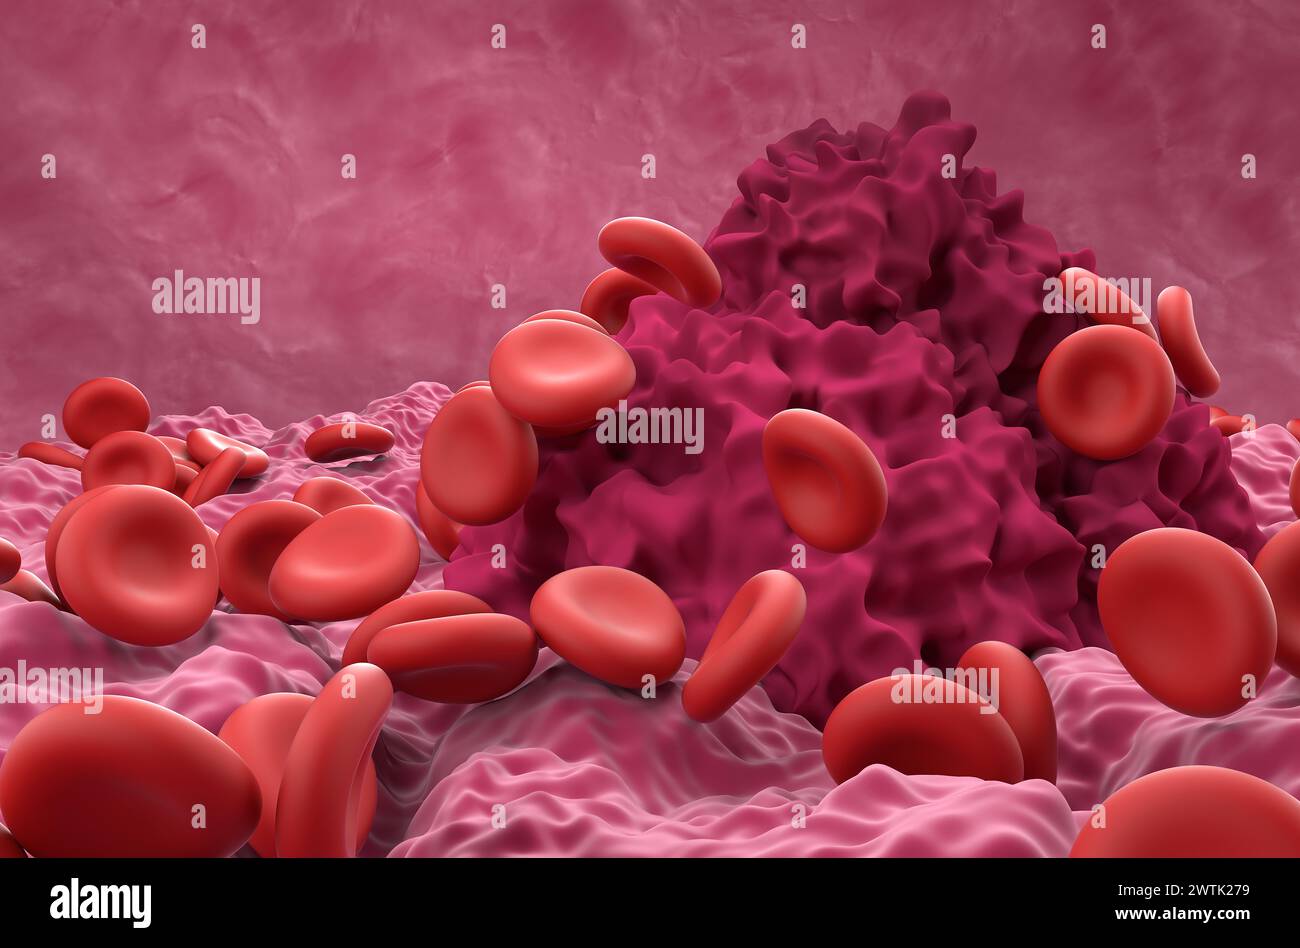 Globuli rossi e coagulo della fibrina - Vista ravvicinata illustrazione 3d. Foto Stock